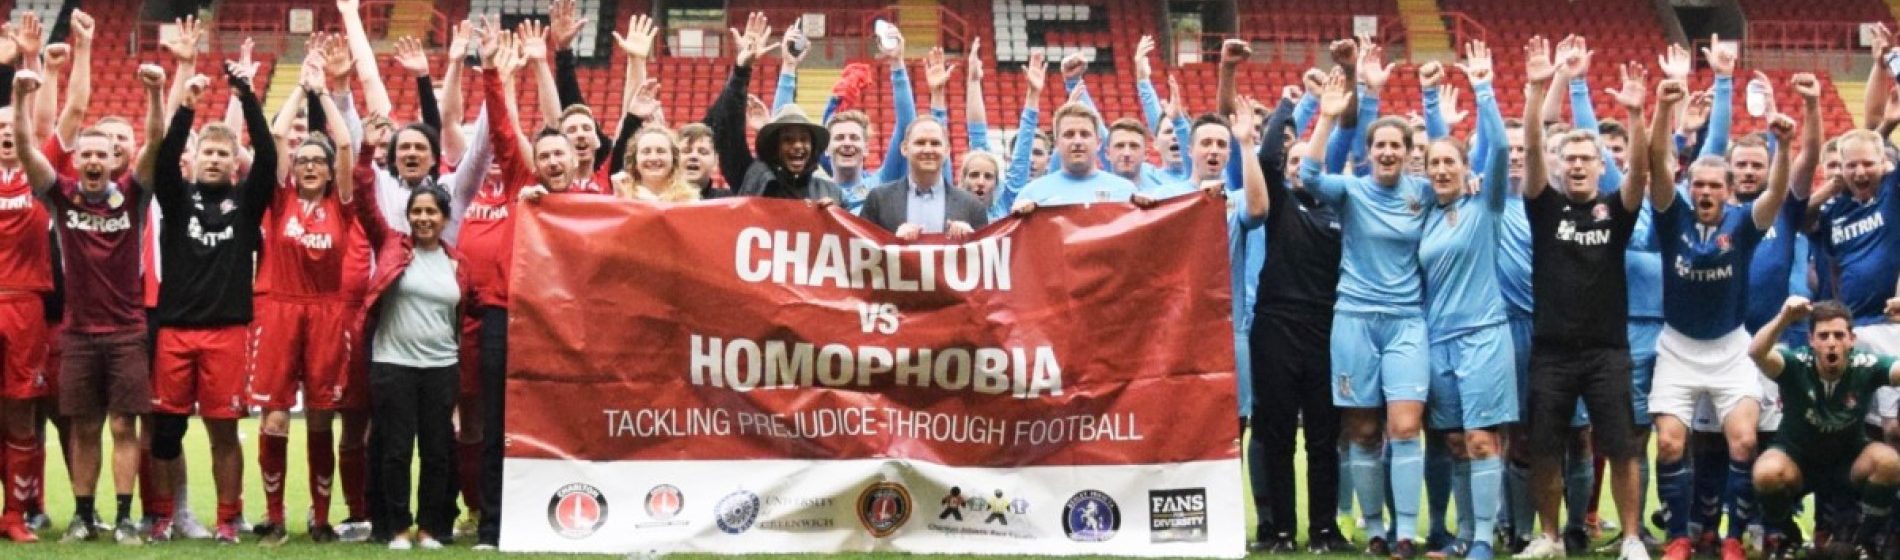 Charlton v Homophobia